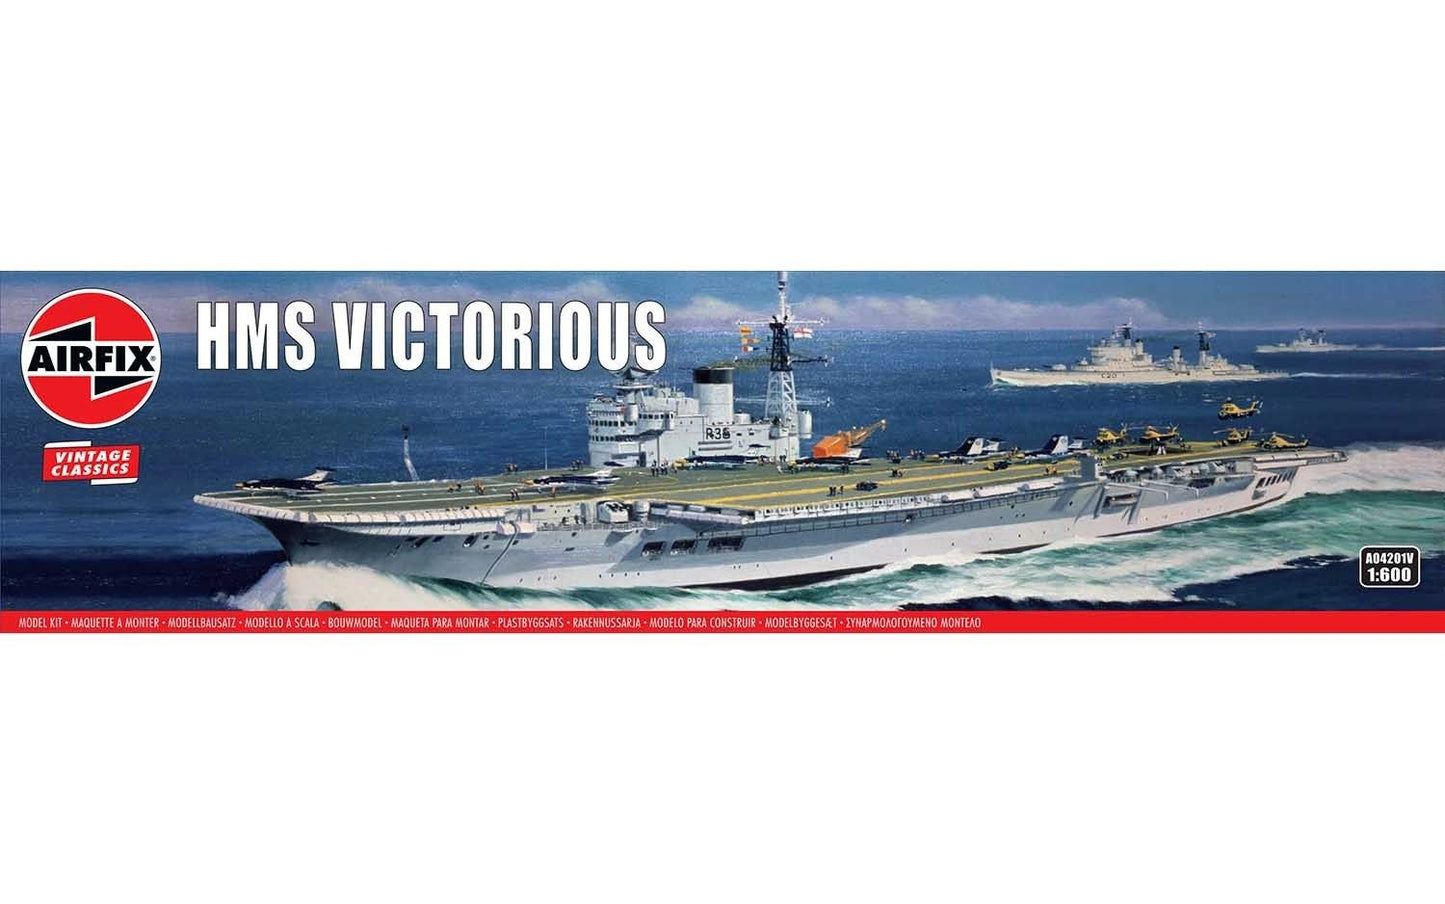 Airfix HMS Victorious Vintage Classic 1:600